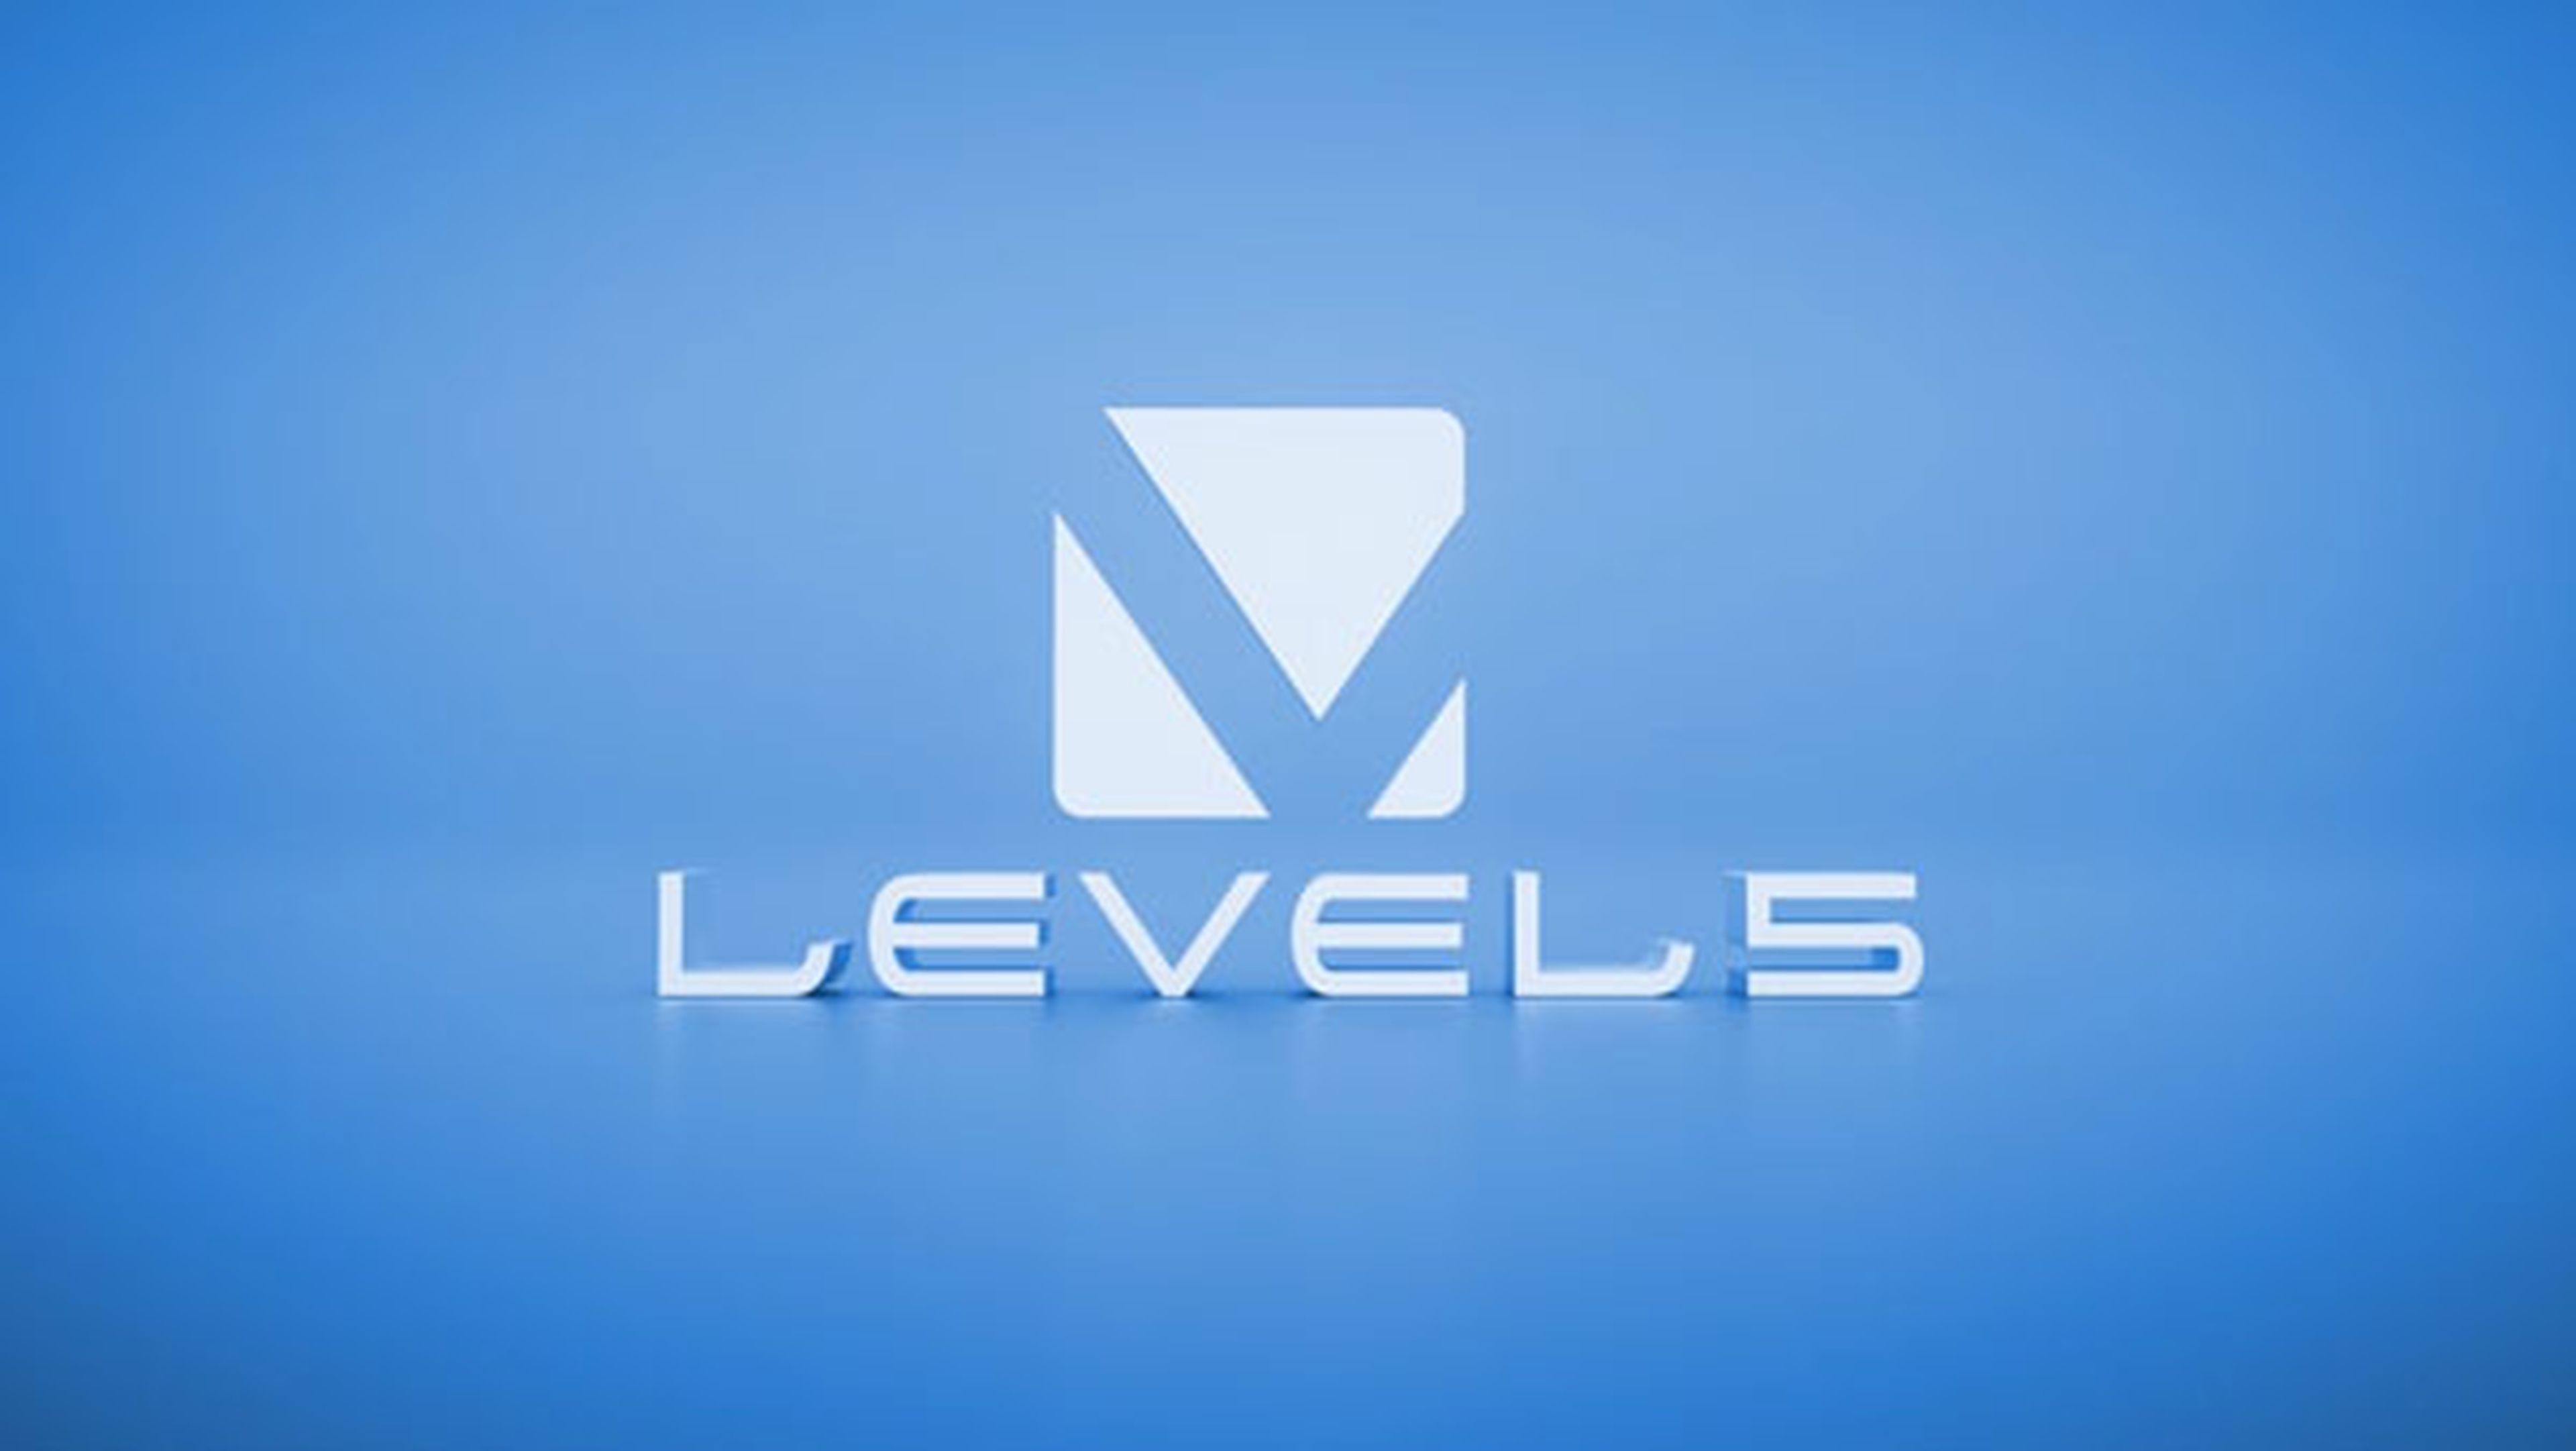 Level 5 logo